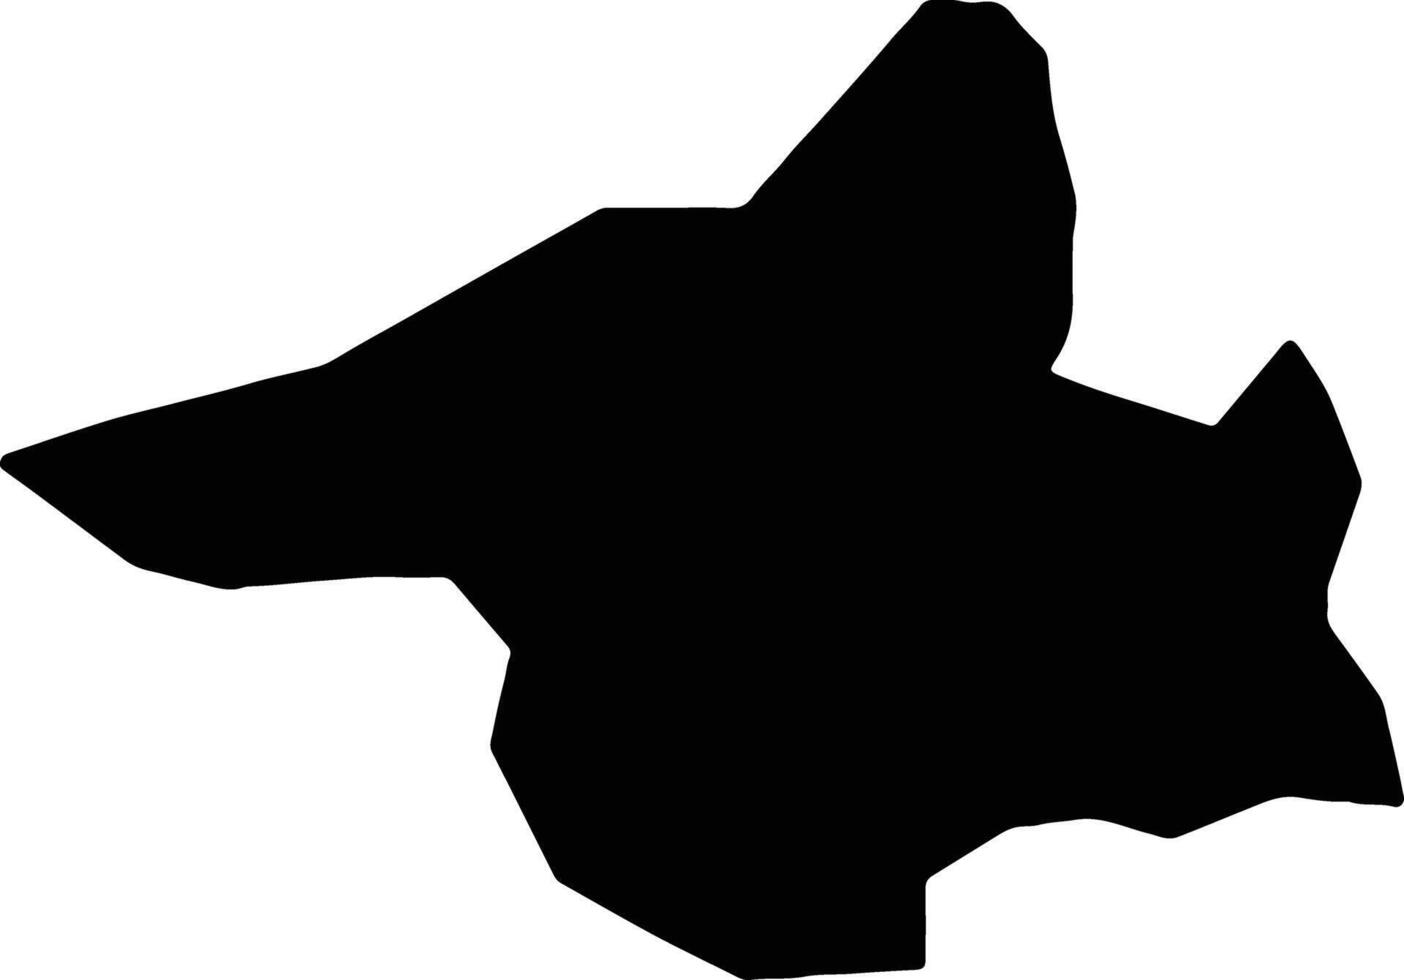 Malisevo Kosovo silhouette map vector